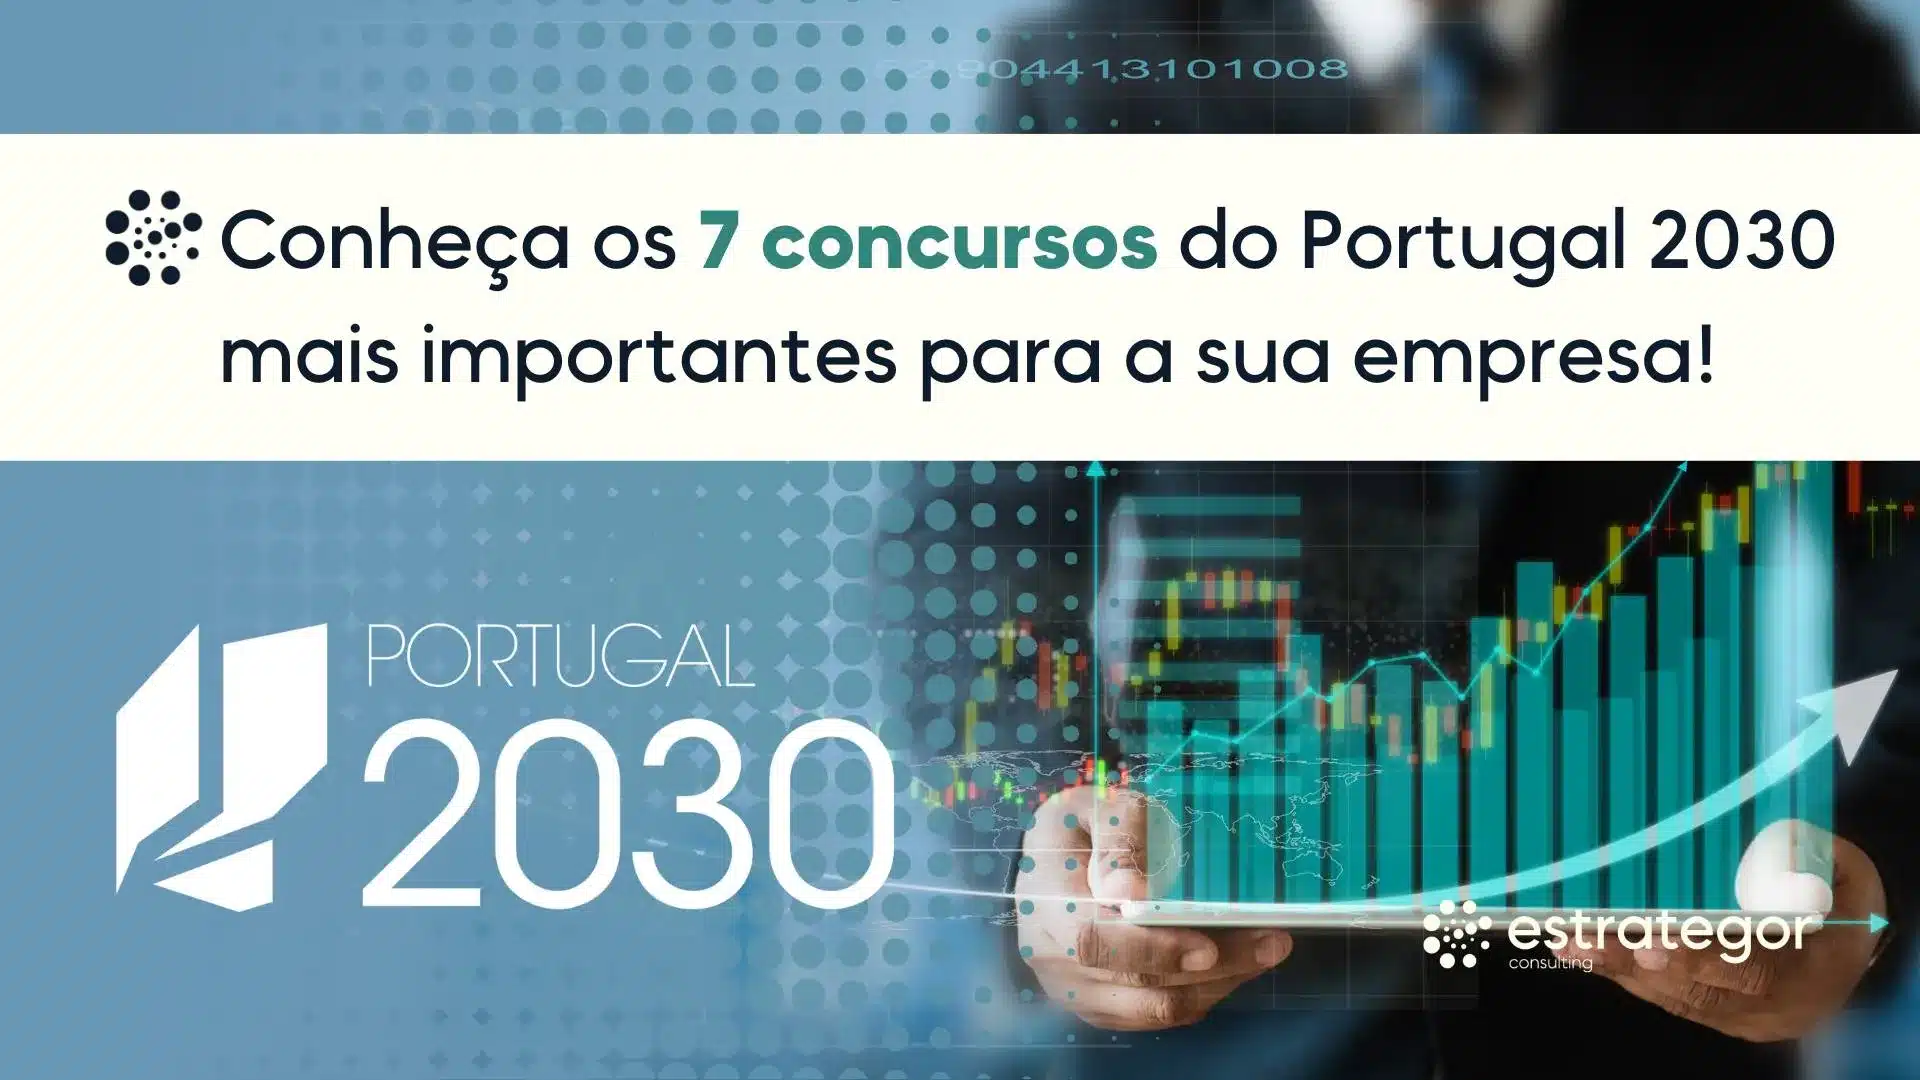 Conheca os 7 concursos do Portugal 2030 mais importantes para a sua empresa